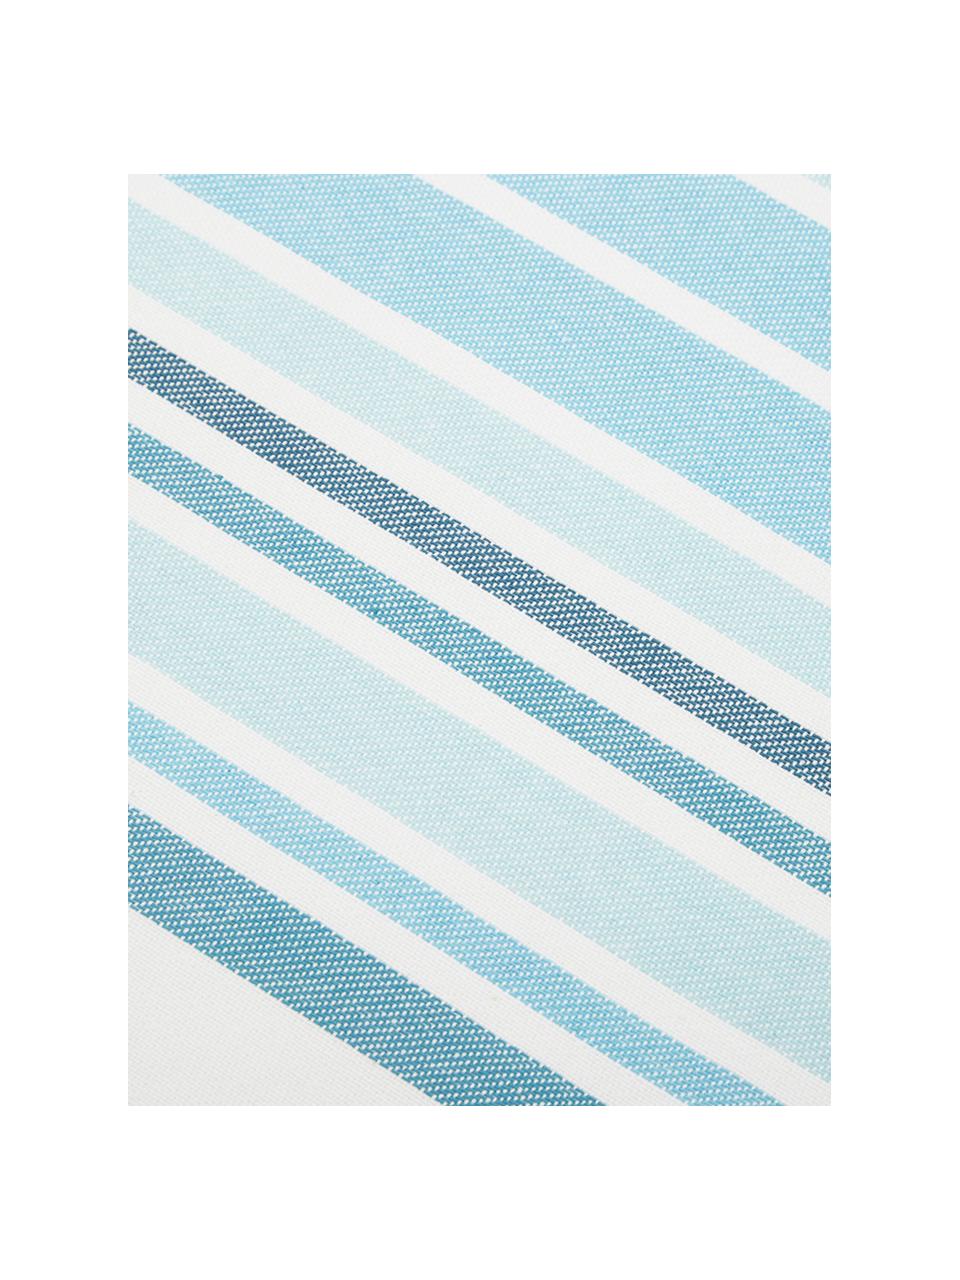 Podkładka Katie, 2 szt., Bawełna, Biały, niebieski, S 40 x D 50 cm